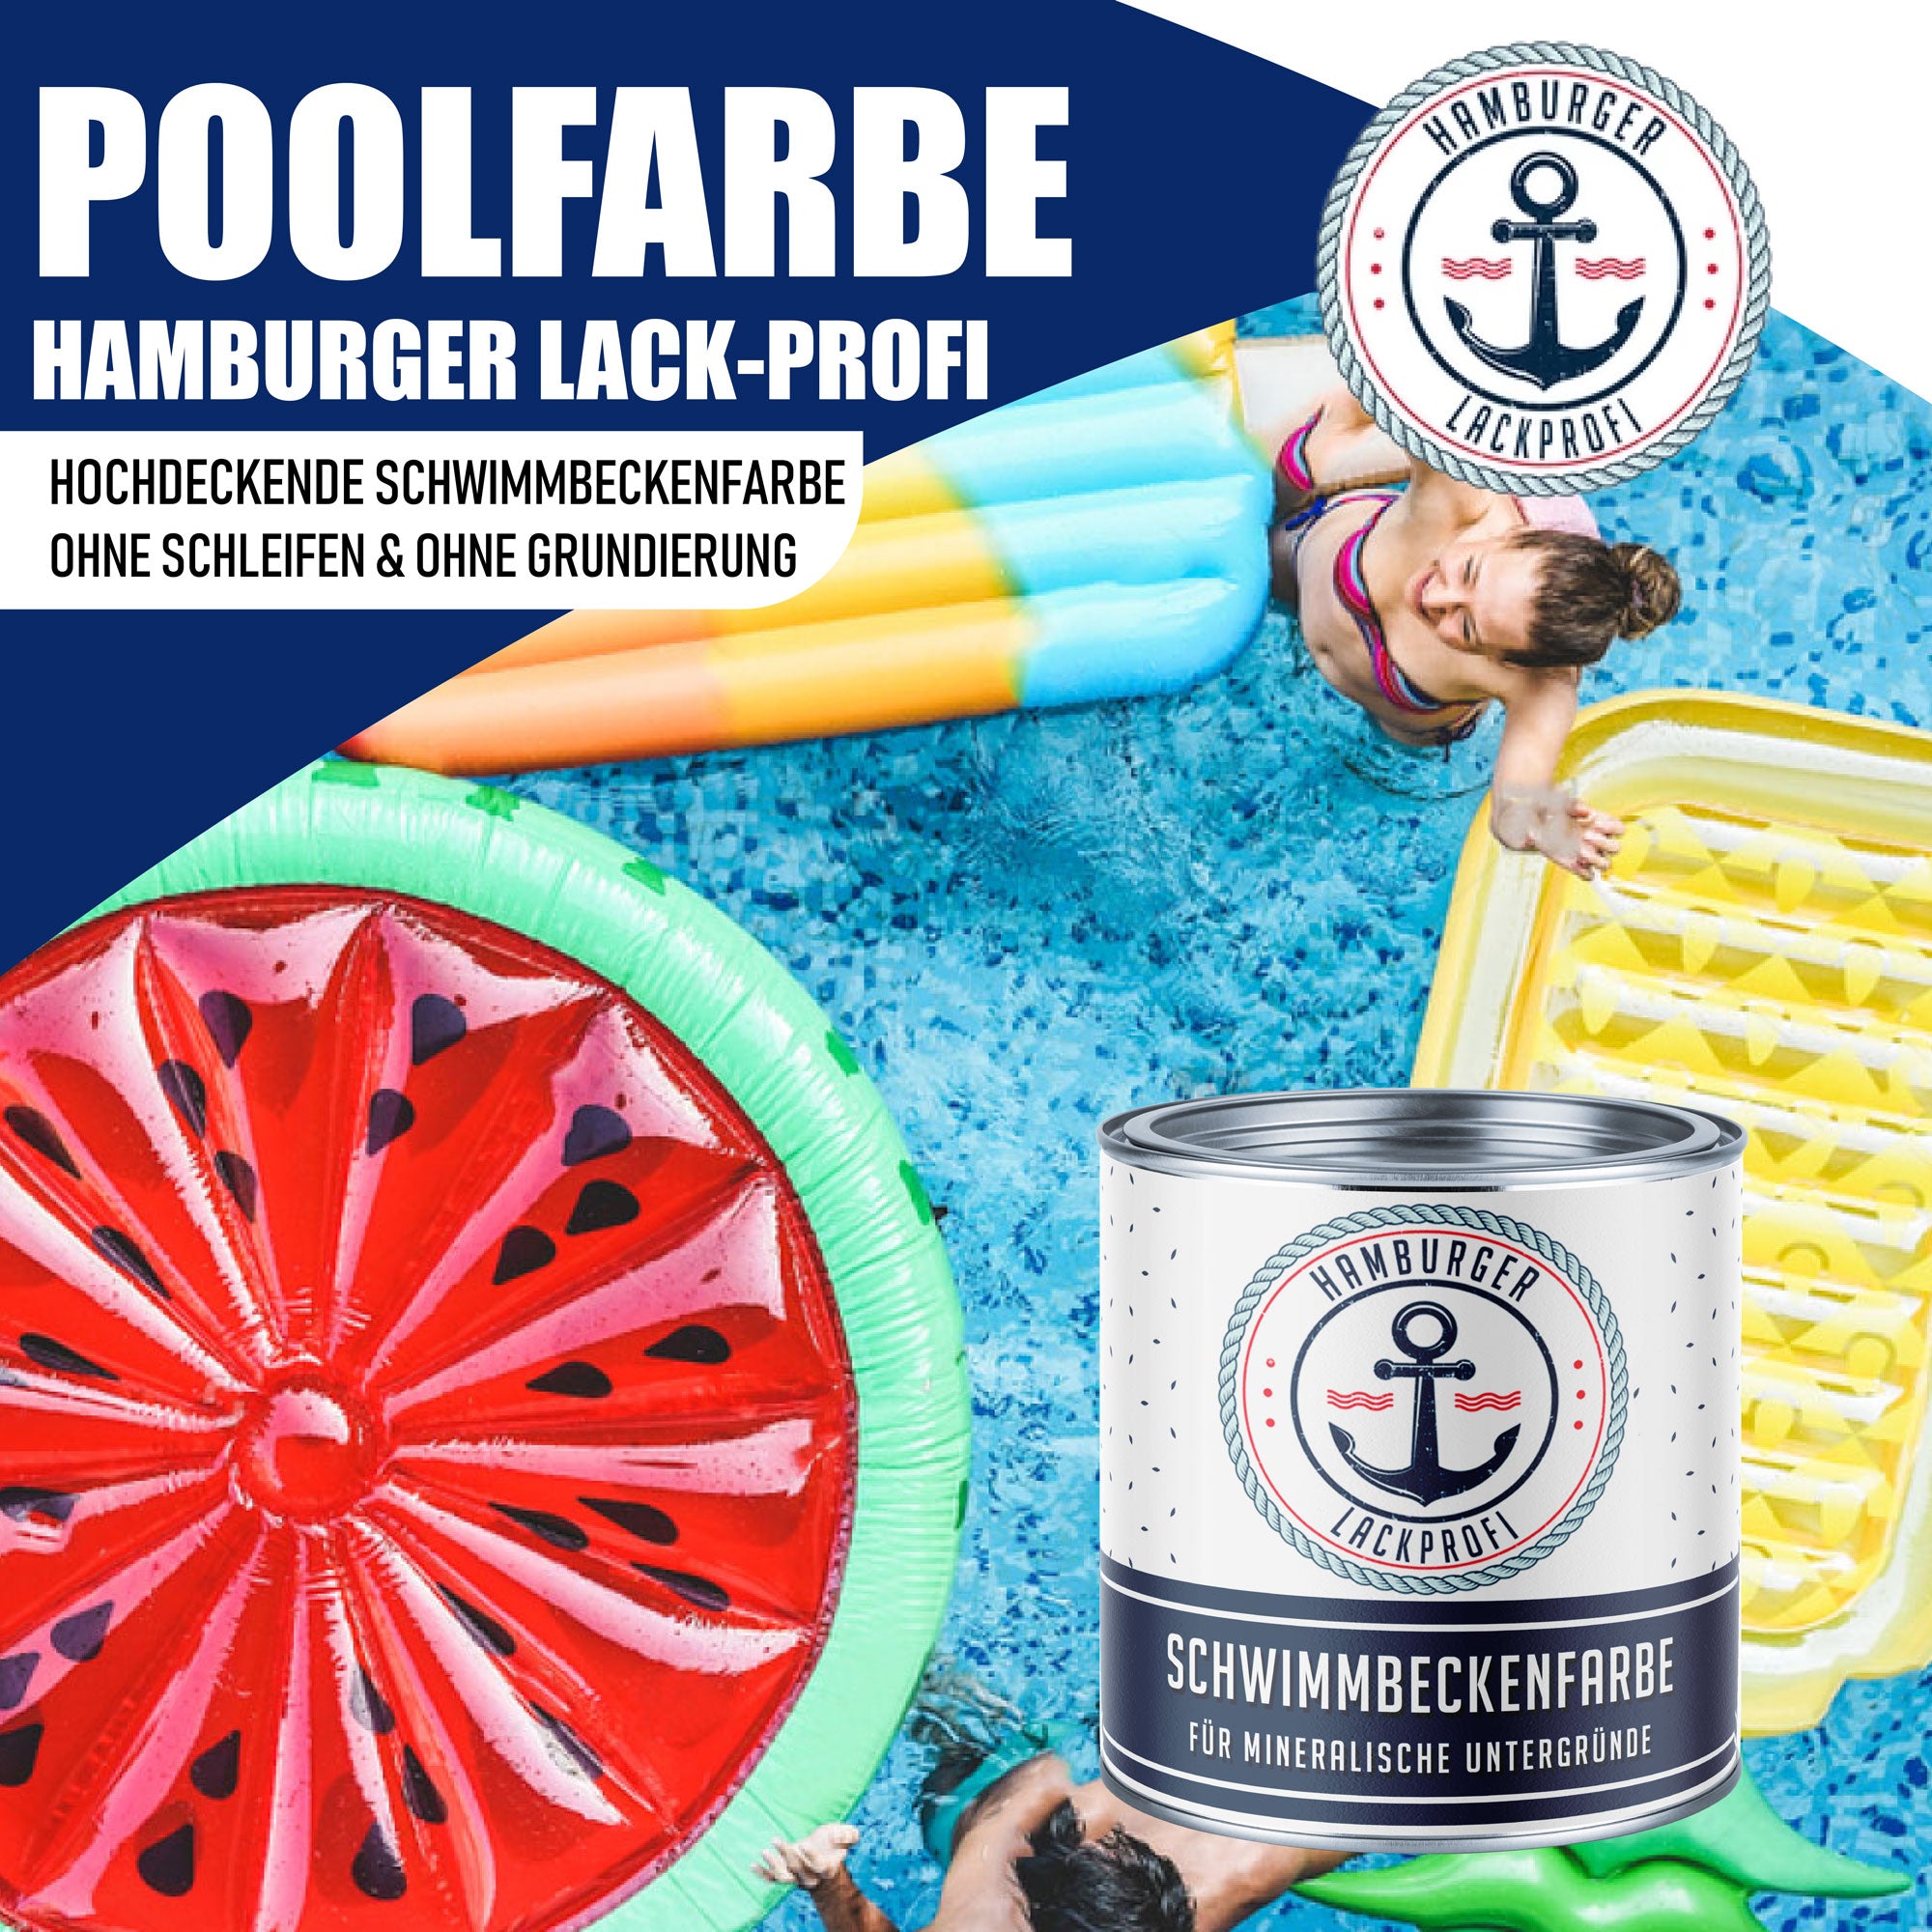 Hamburger Lack-Profi Schwimmbeckenfarbe Reingrün RAL 6037 - hochdeckende Poolfarbe